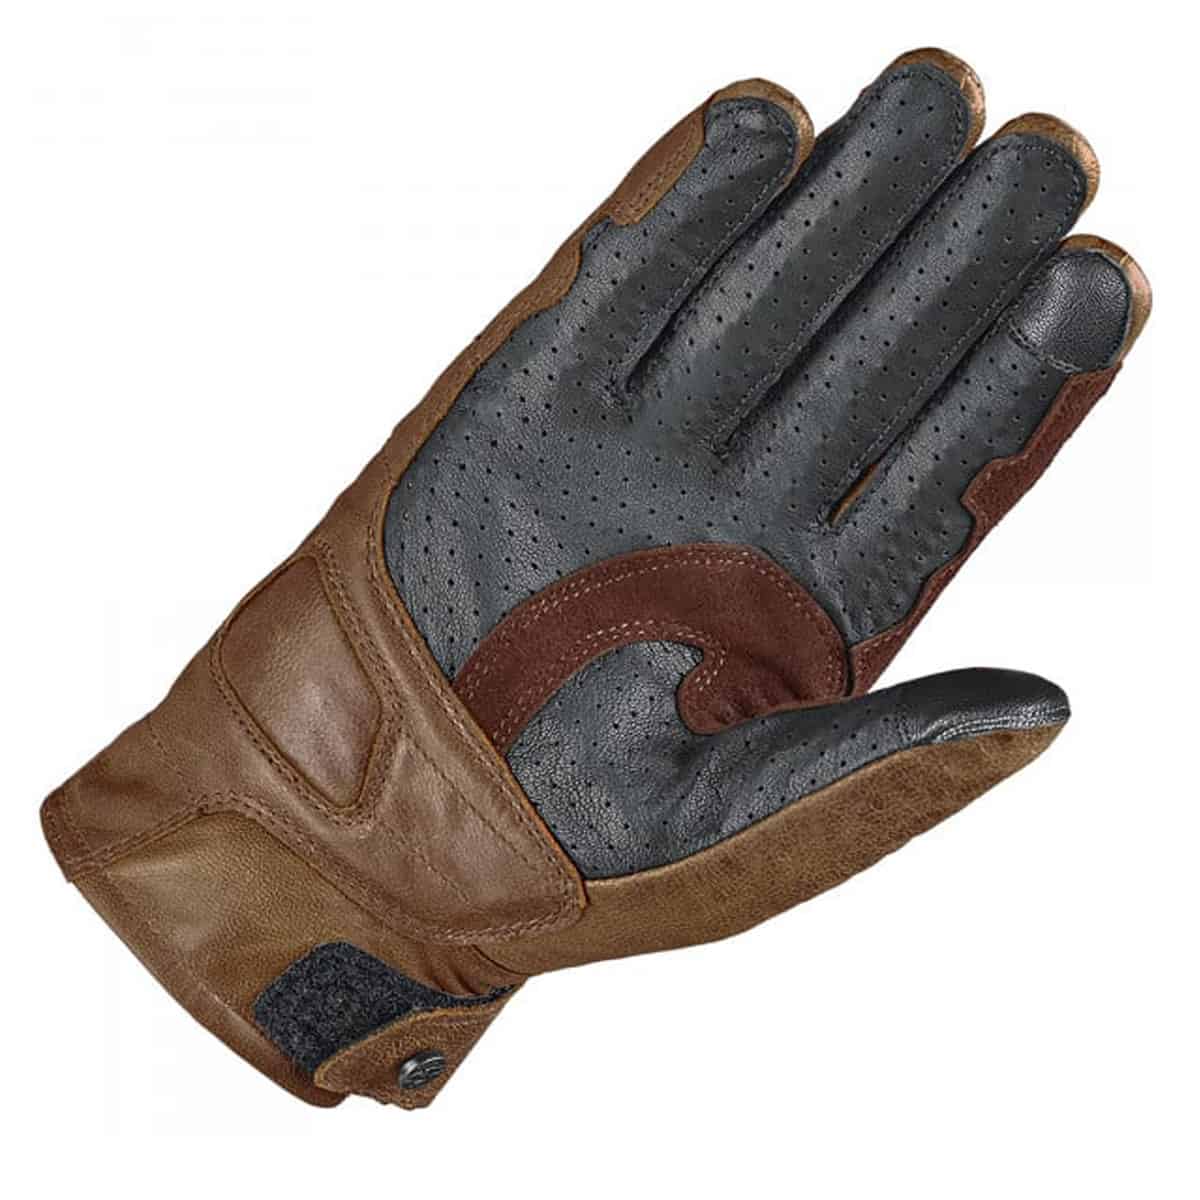 Held Sanford summer leather gloves back